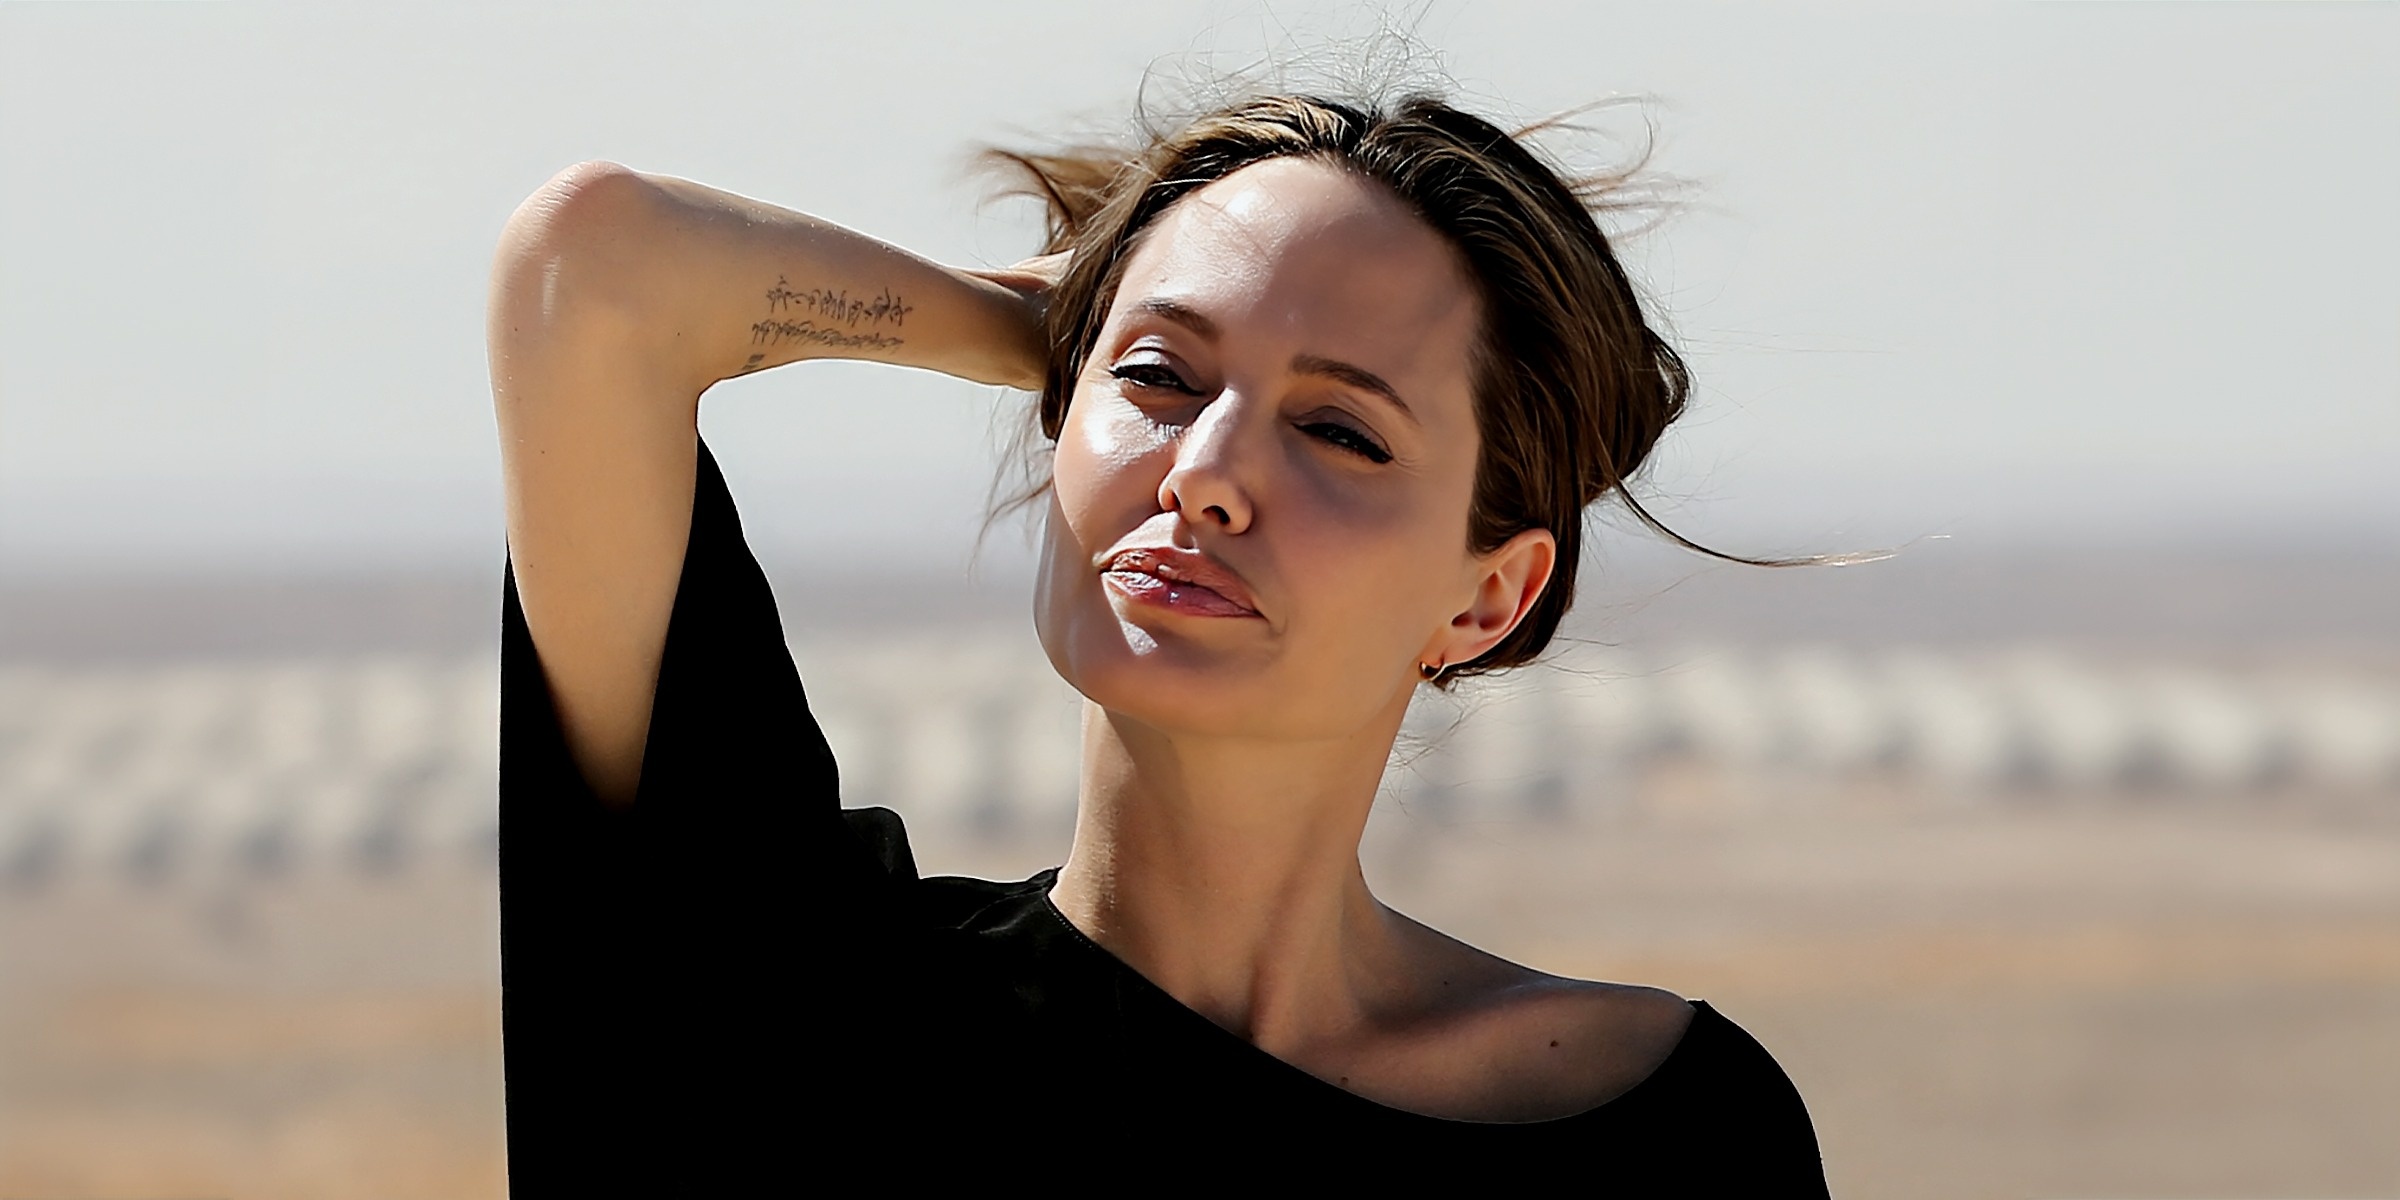 Hào quang có trở lại với Angelina Jolie? - ảnh 1